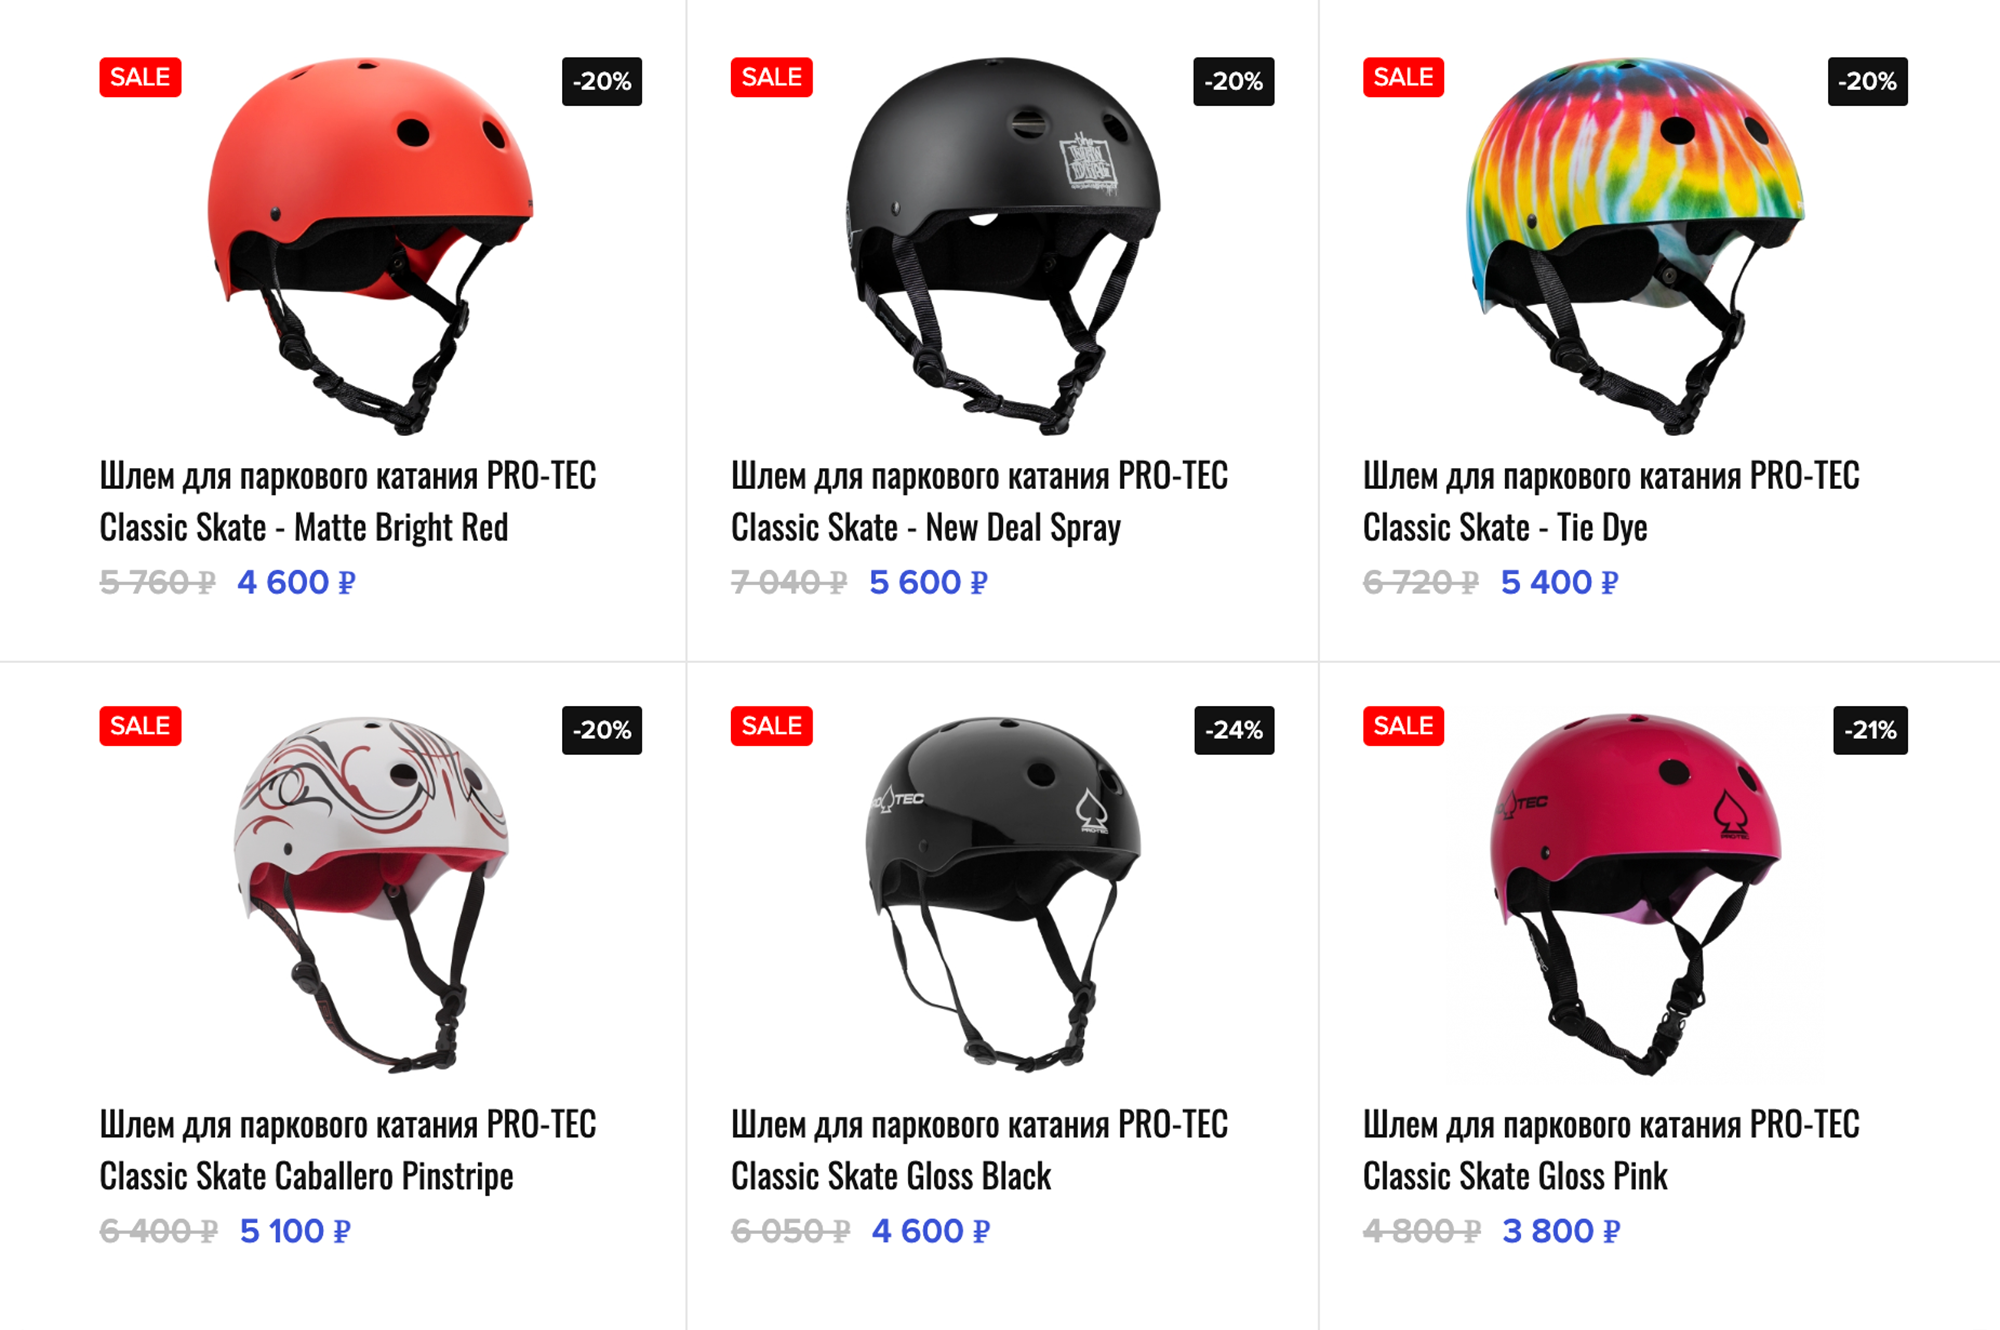 Для безопасного катания на скейтборде подходят подобные шлемы. Источник: skvot.com